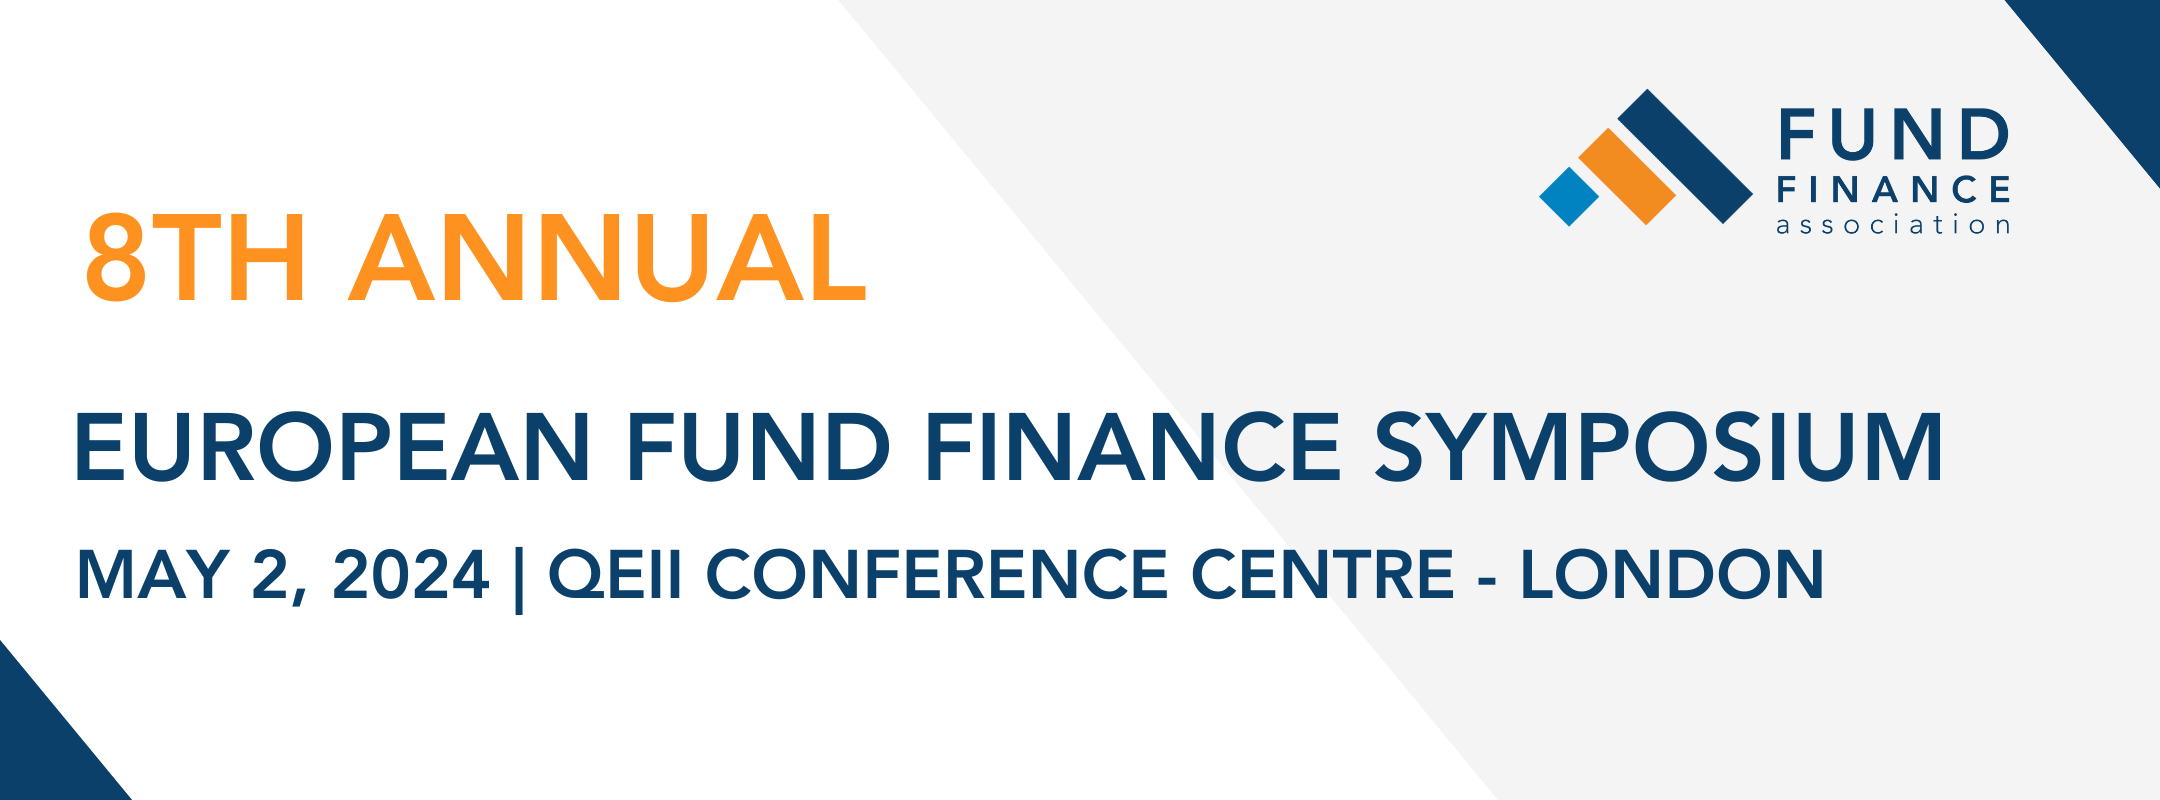 2024 European Fund Finance Symposium